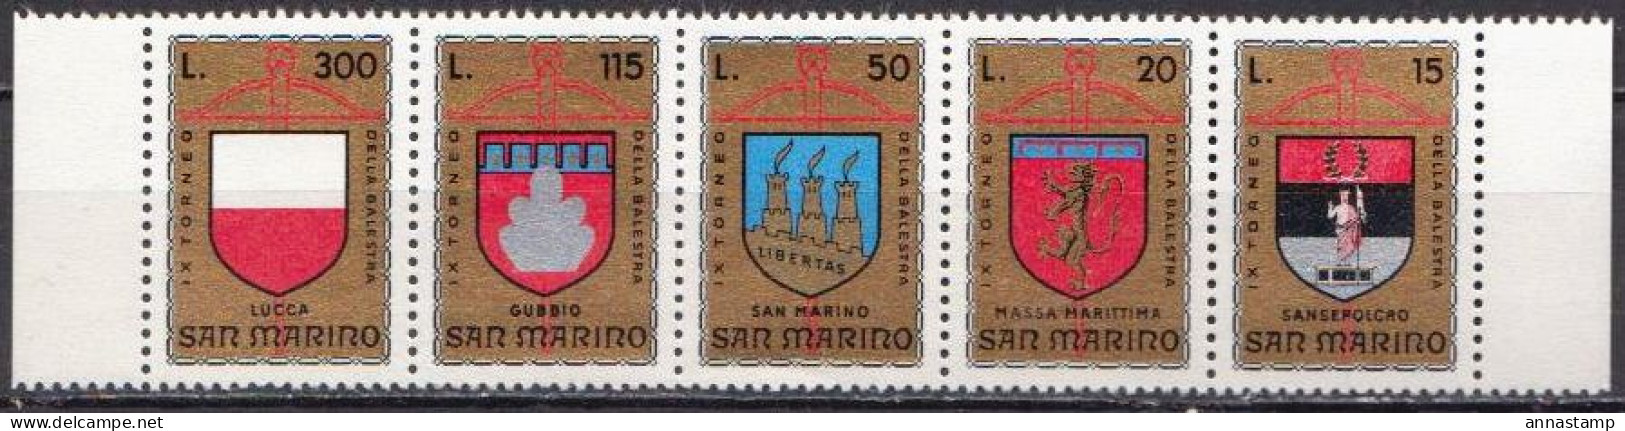 San Marino MNH Set - Stamps